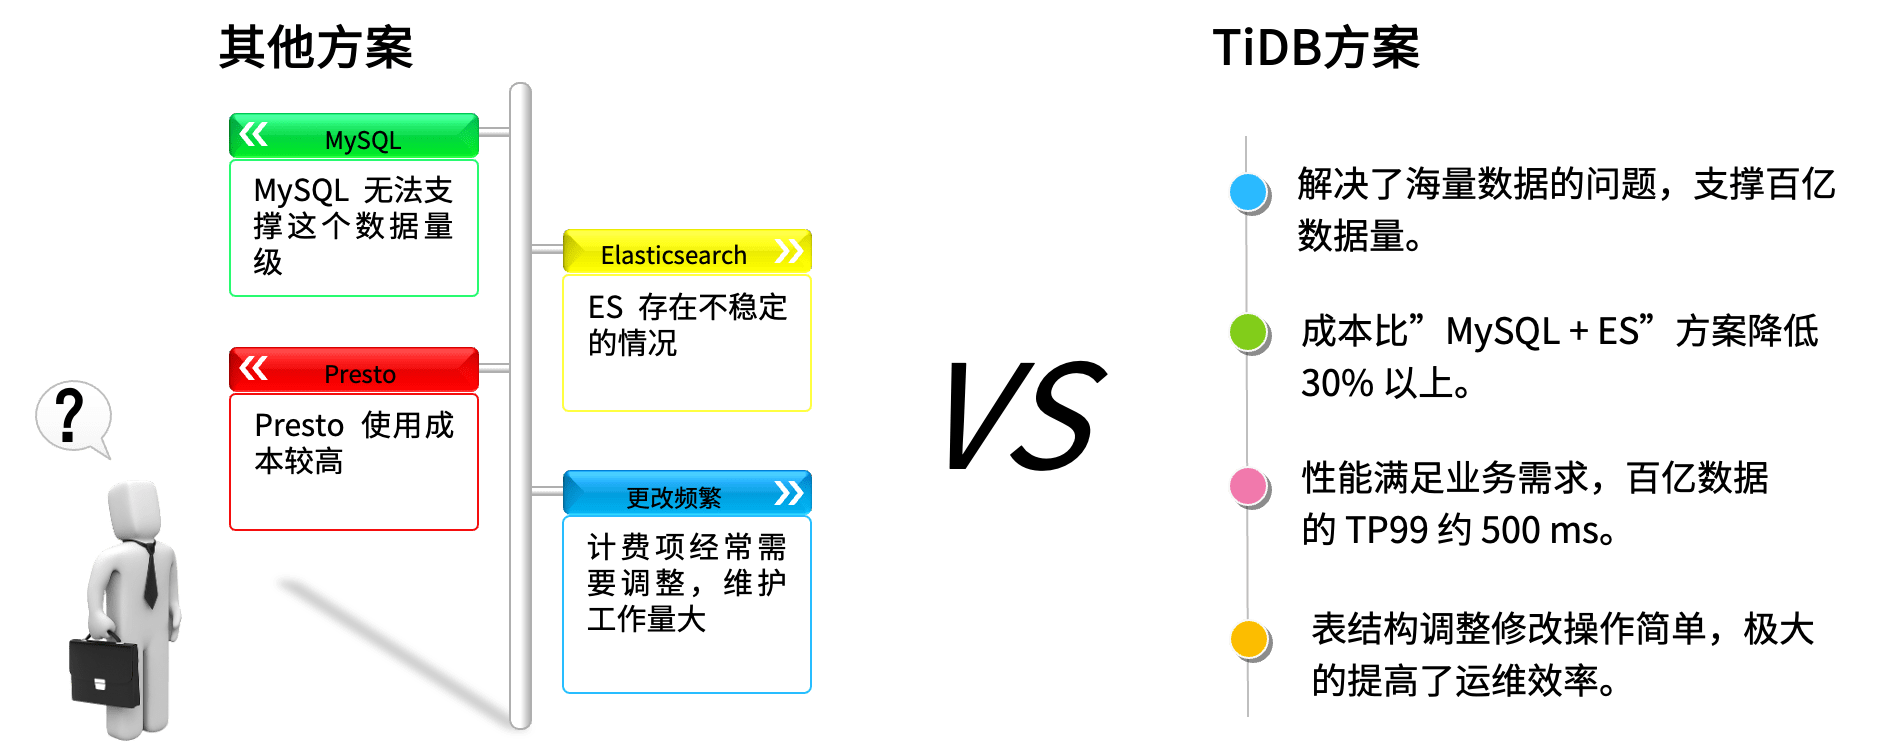 TiDB+京东云数据库打造极速秒杀体验